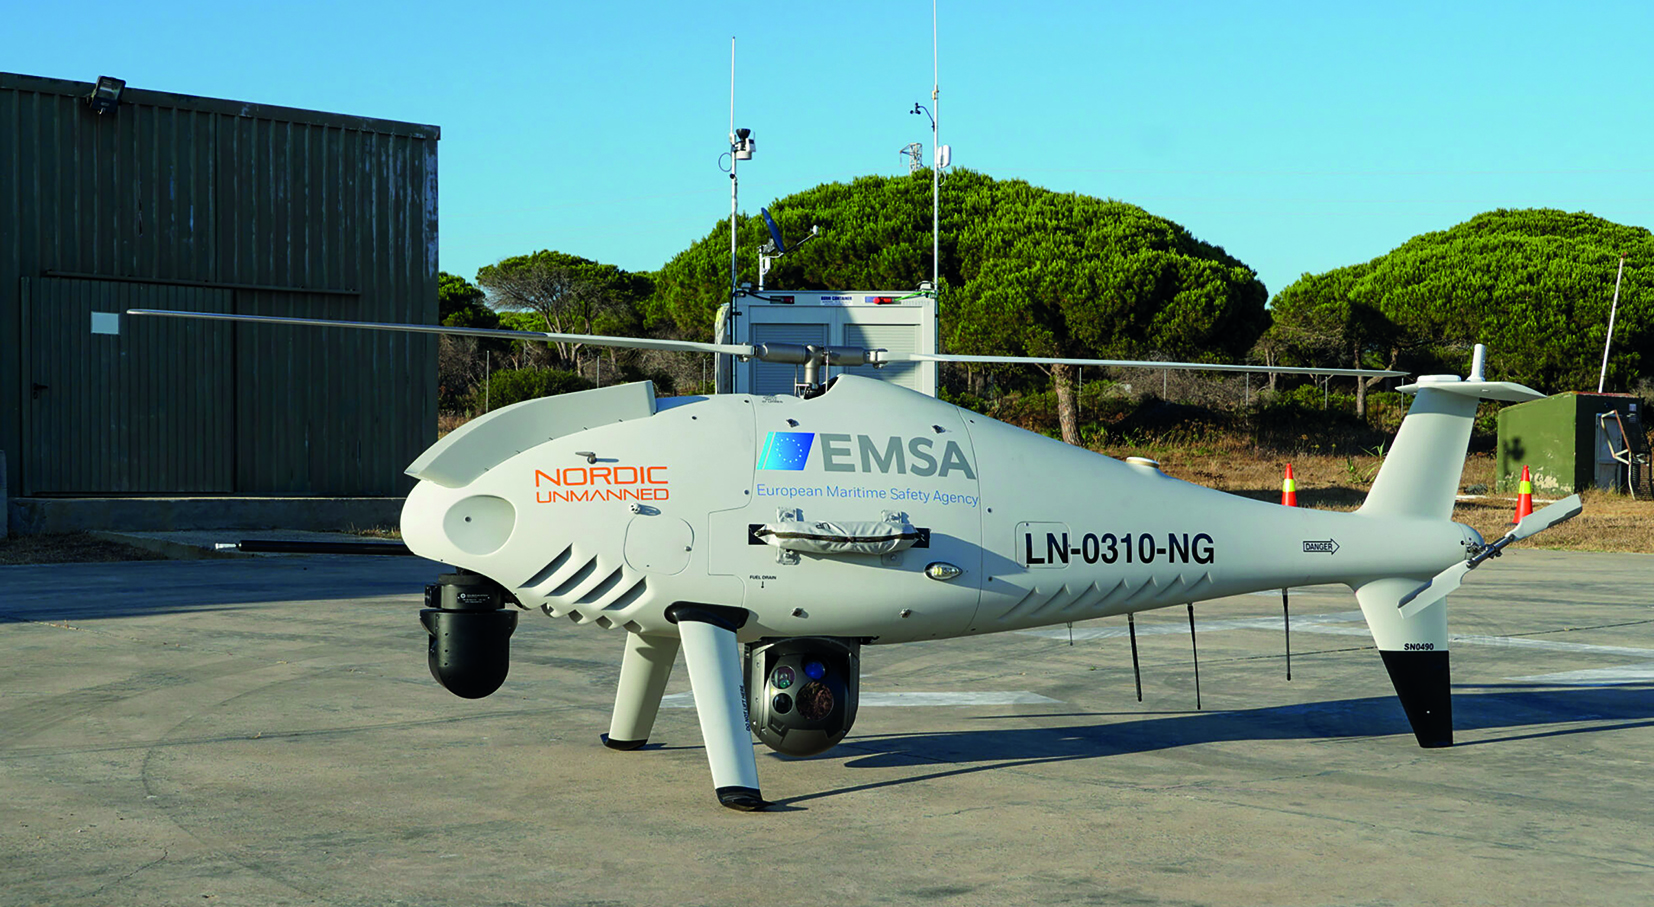 Dron de la EMSA empleado en vigilancia y control fronterizo